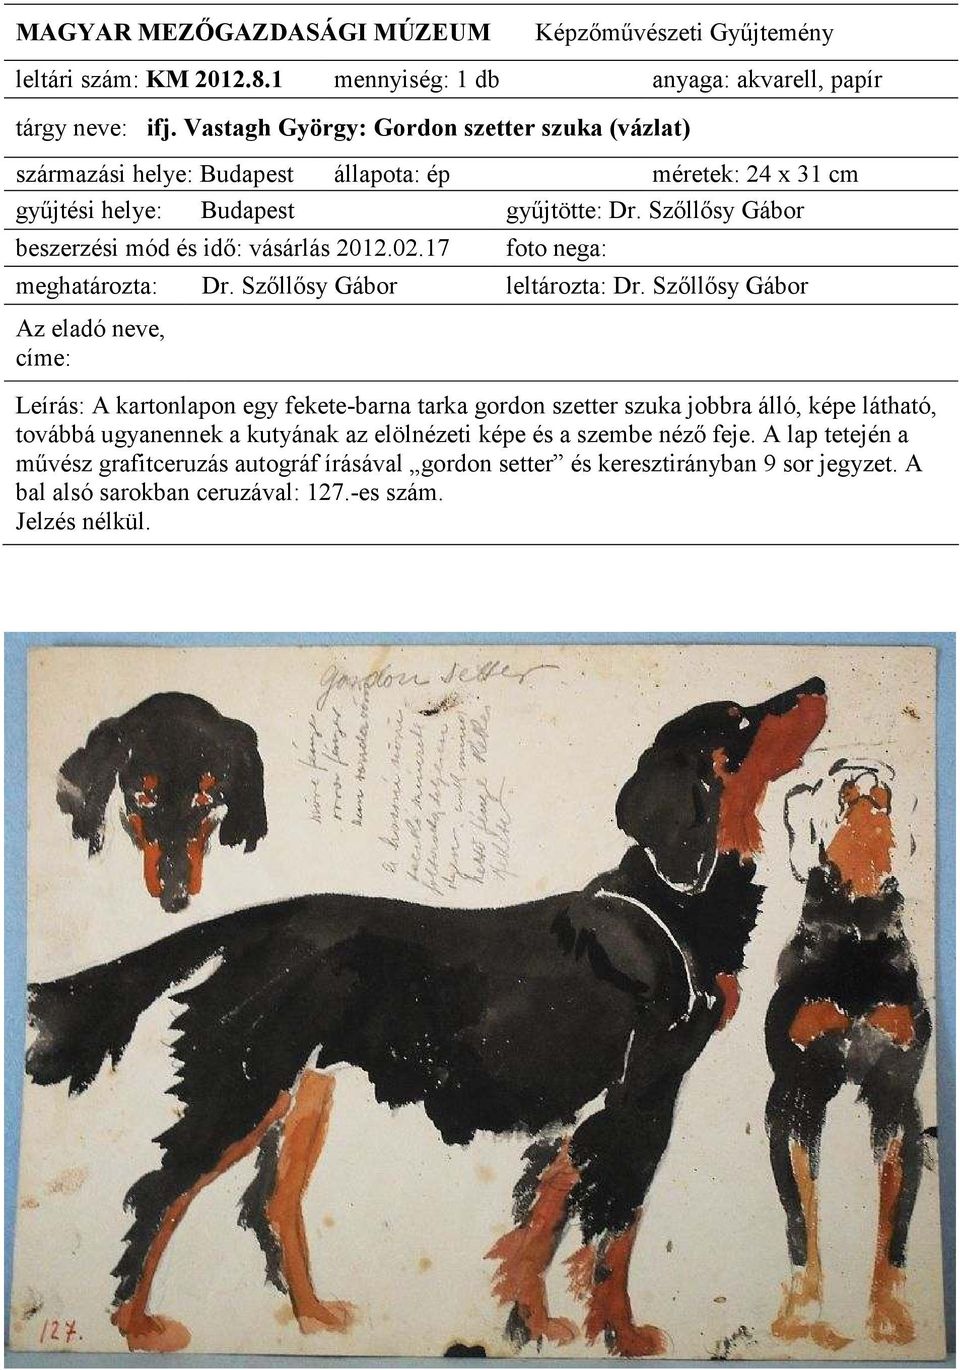 egy fekete-barna tarka gordon szetter szuka jobbra álló, képe látható, továbbá ugyanennek a kutyának az elölnézeti képe és a